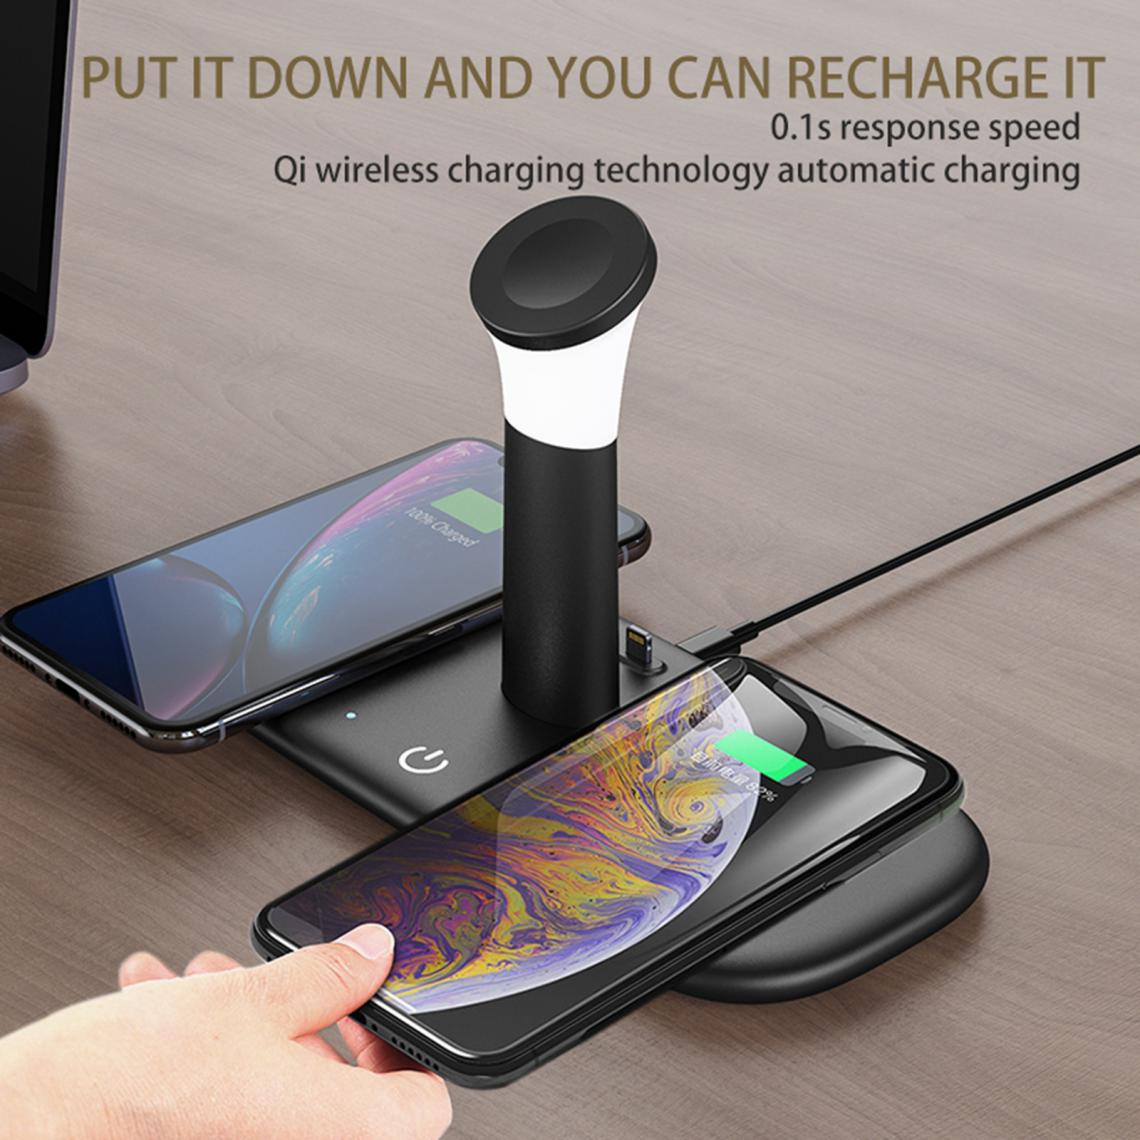 marque generique - Qi Wireless Pad Charger Dock Pour IPhone IWatch 6/5/4/3/2 Noir - Chargeur secteur téléphone